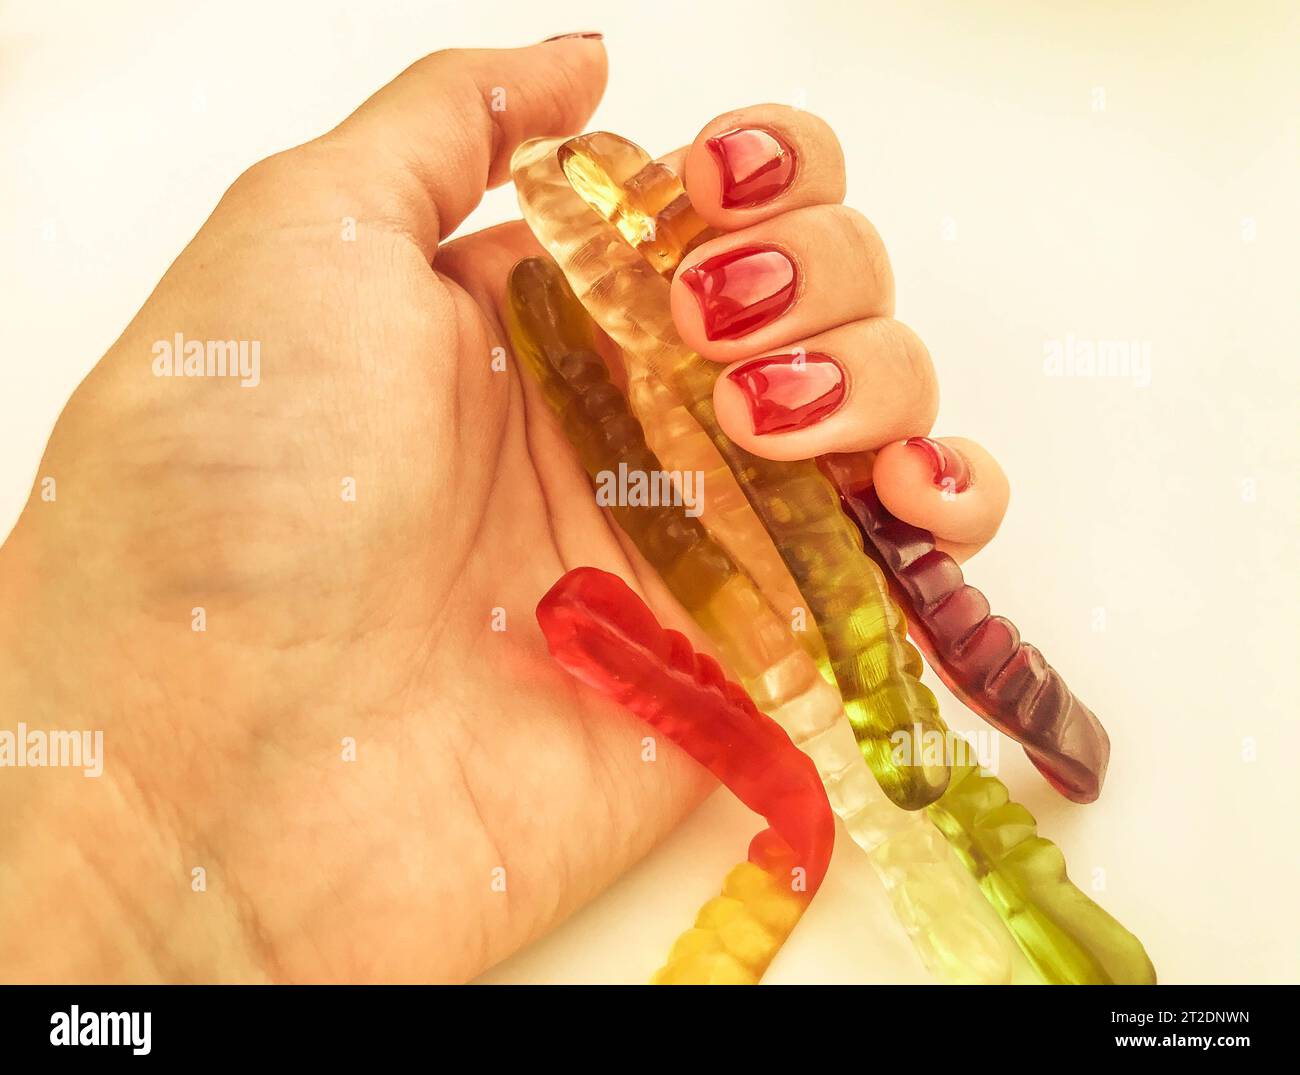 Viele Gummiwürmer liegen auf der Hand des Mädchens. Helle, rote, glänzende Maniküre auf orangefarbenem, mattem Hintergrund. Gelatinöse Würmer liegen in Ihrer Handfläche Stockfoto